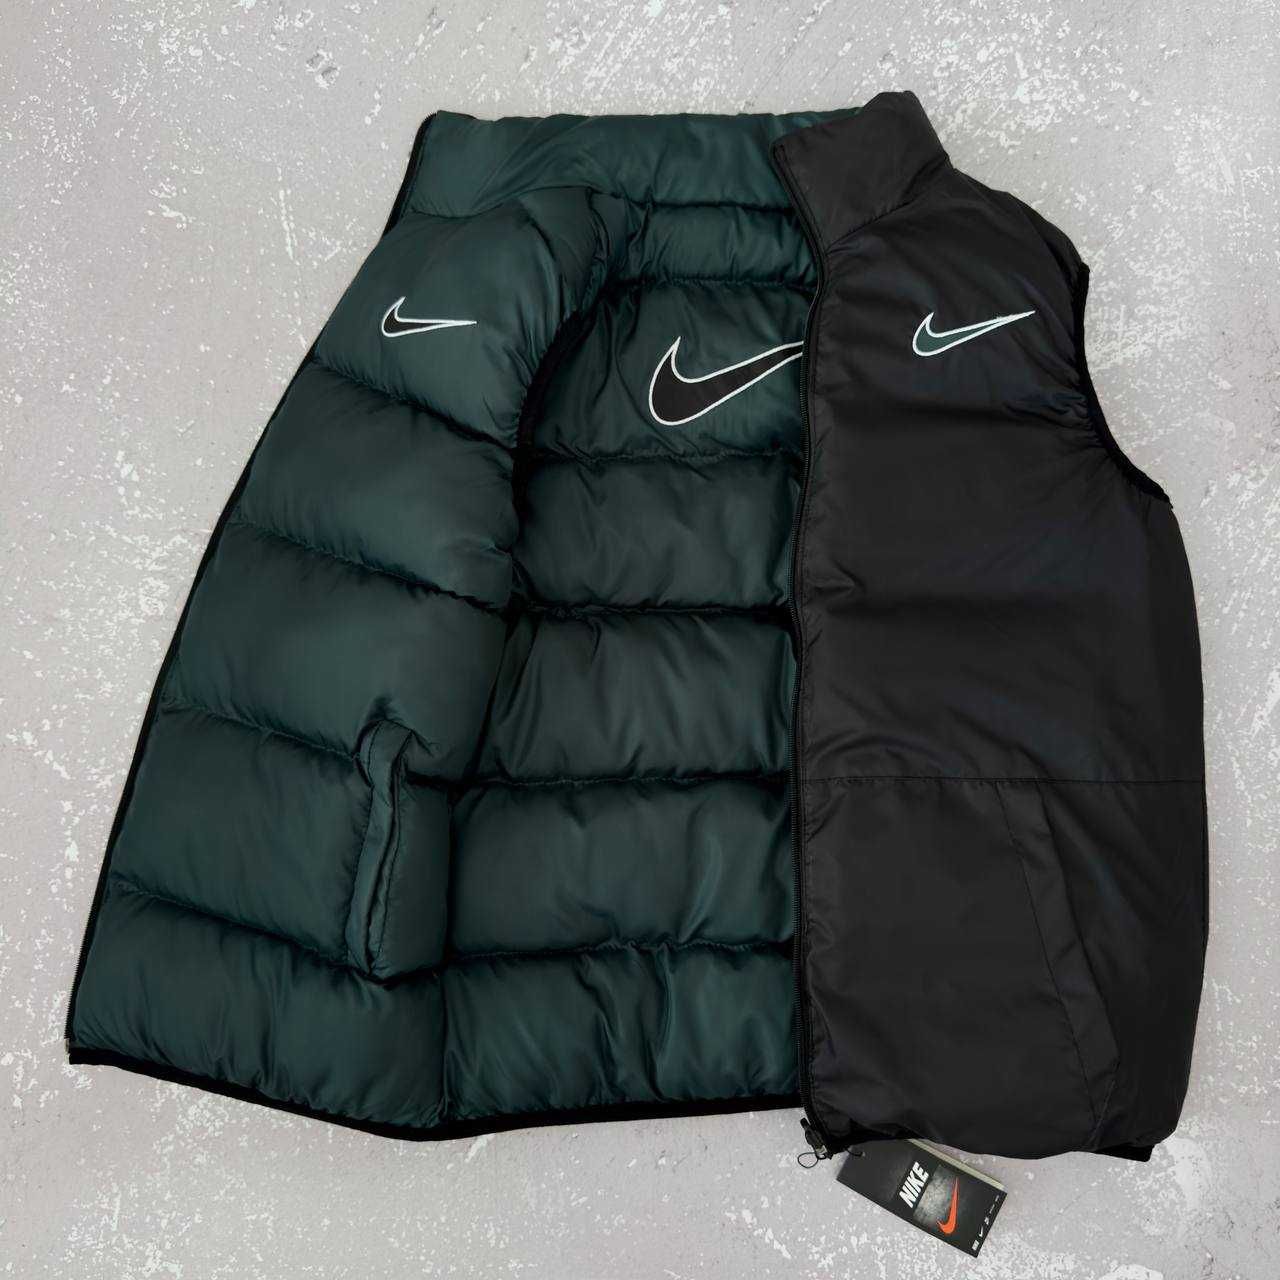 Мужской спортивный костюм Nike комплект [3в1] xs,s,m,l,xl,xxl,xxxl